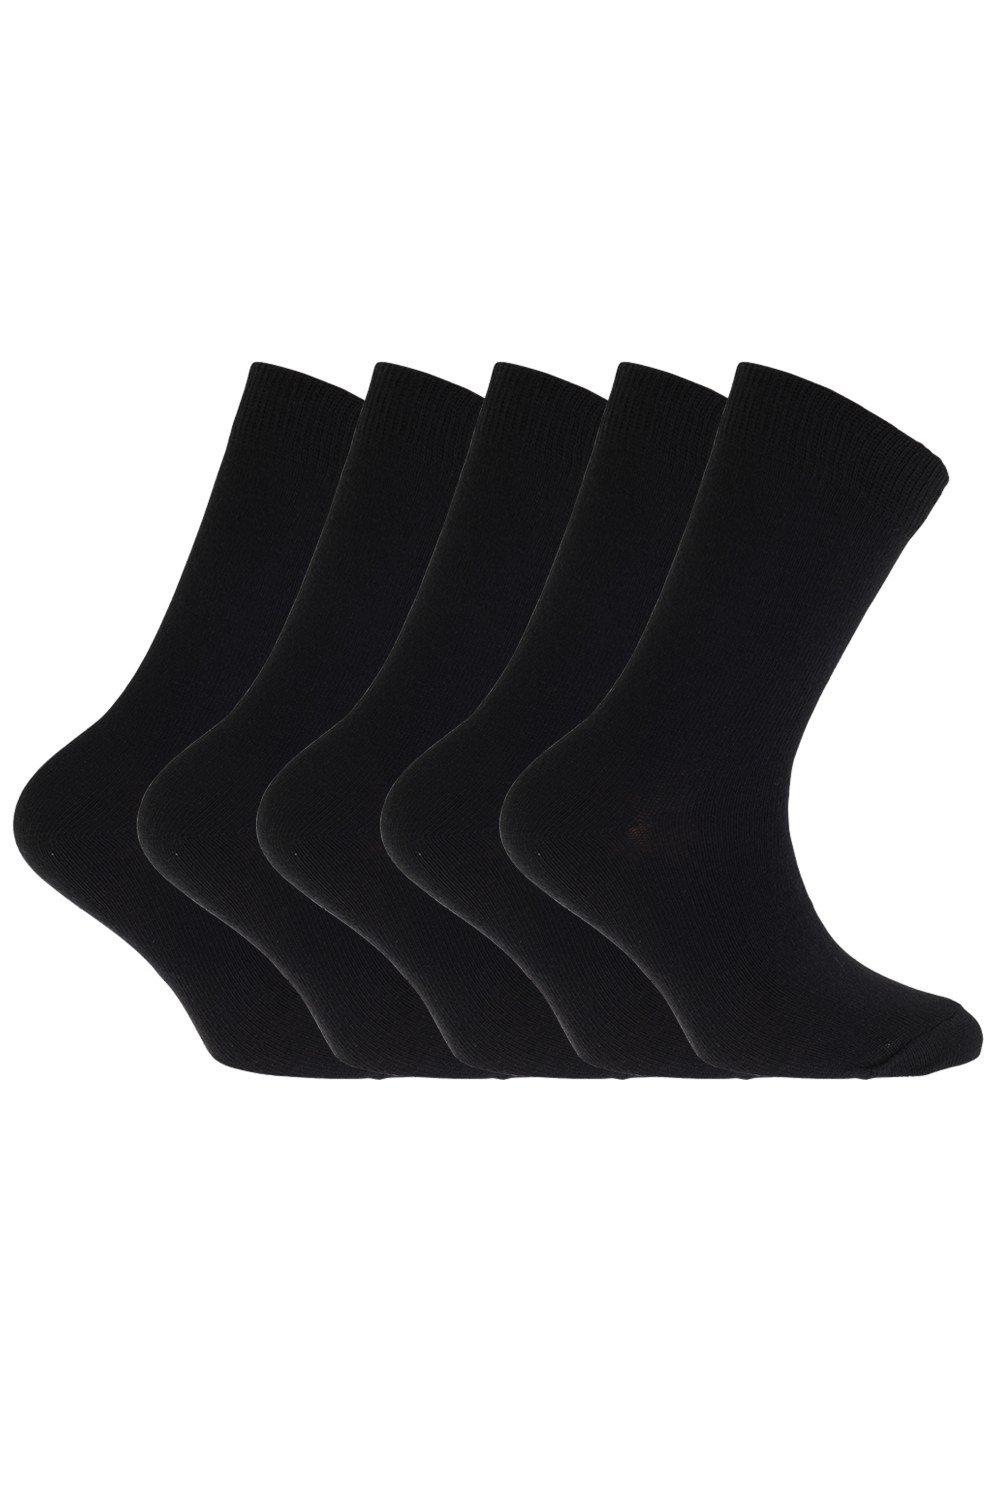 Plain School Socks (Pack Of 5)